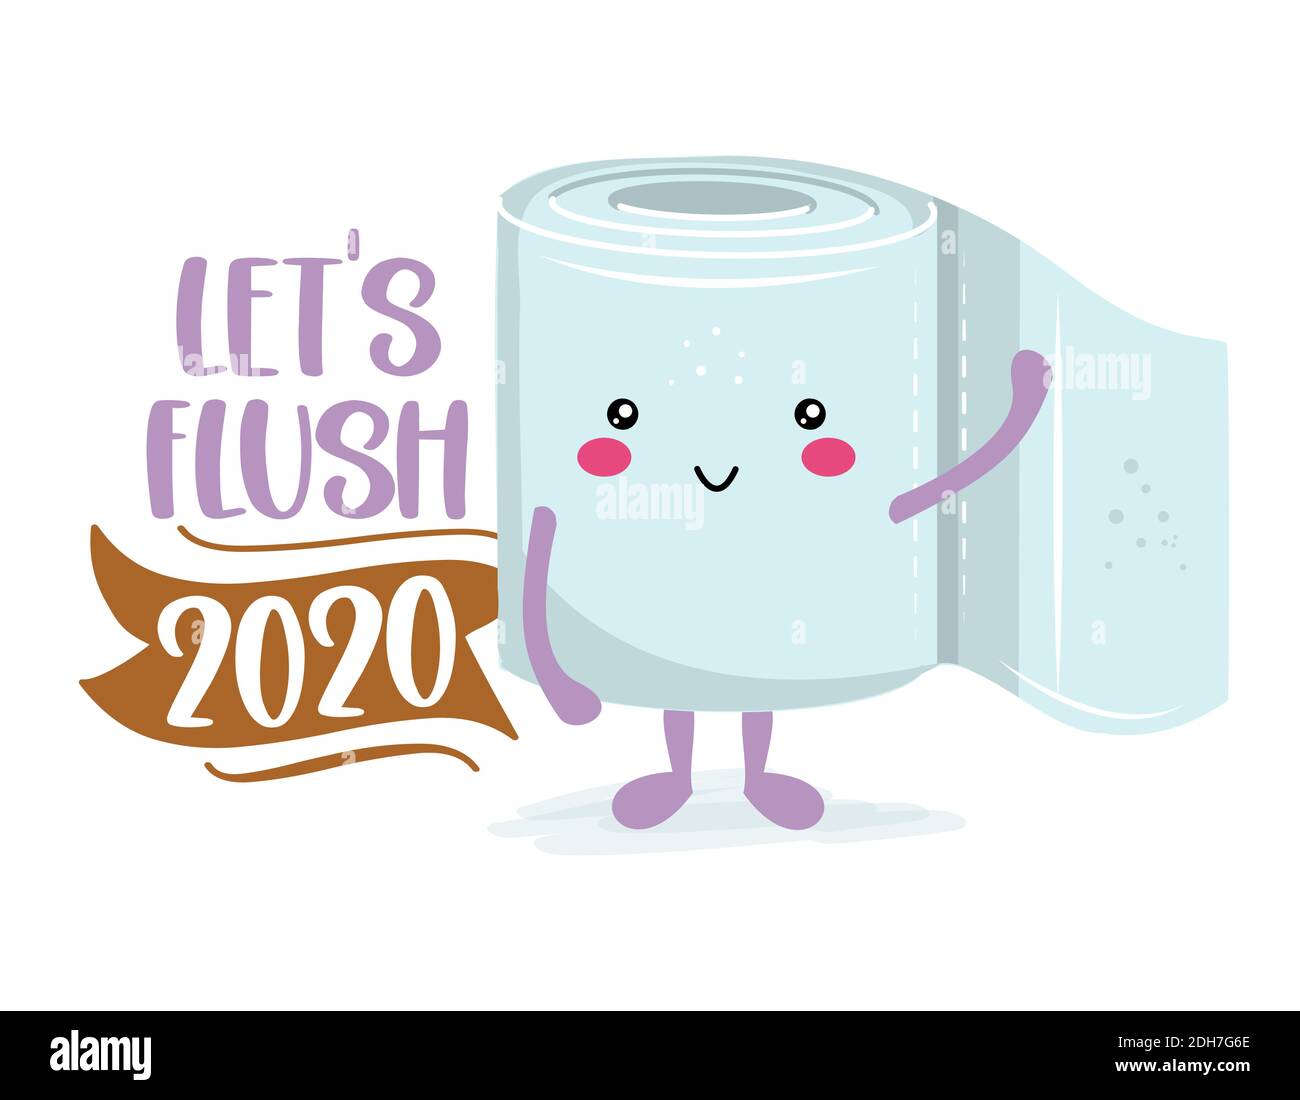 Affleurons 2020 - papier toilette drôle dans le style kawaii. Coronavirus covid-19 personnage drôle cartes de voeux de Noël, invitations. Pour une sueur de Noël déplaisante Illustration de Vecteur